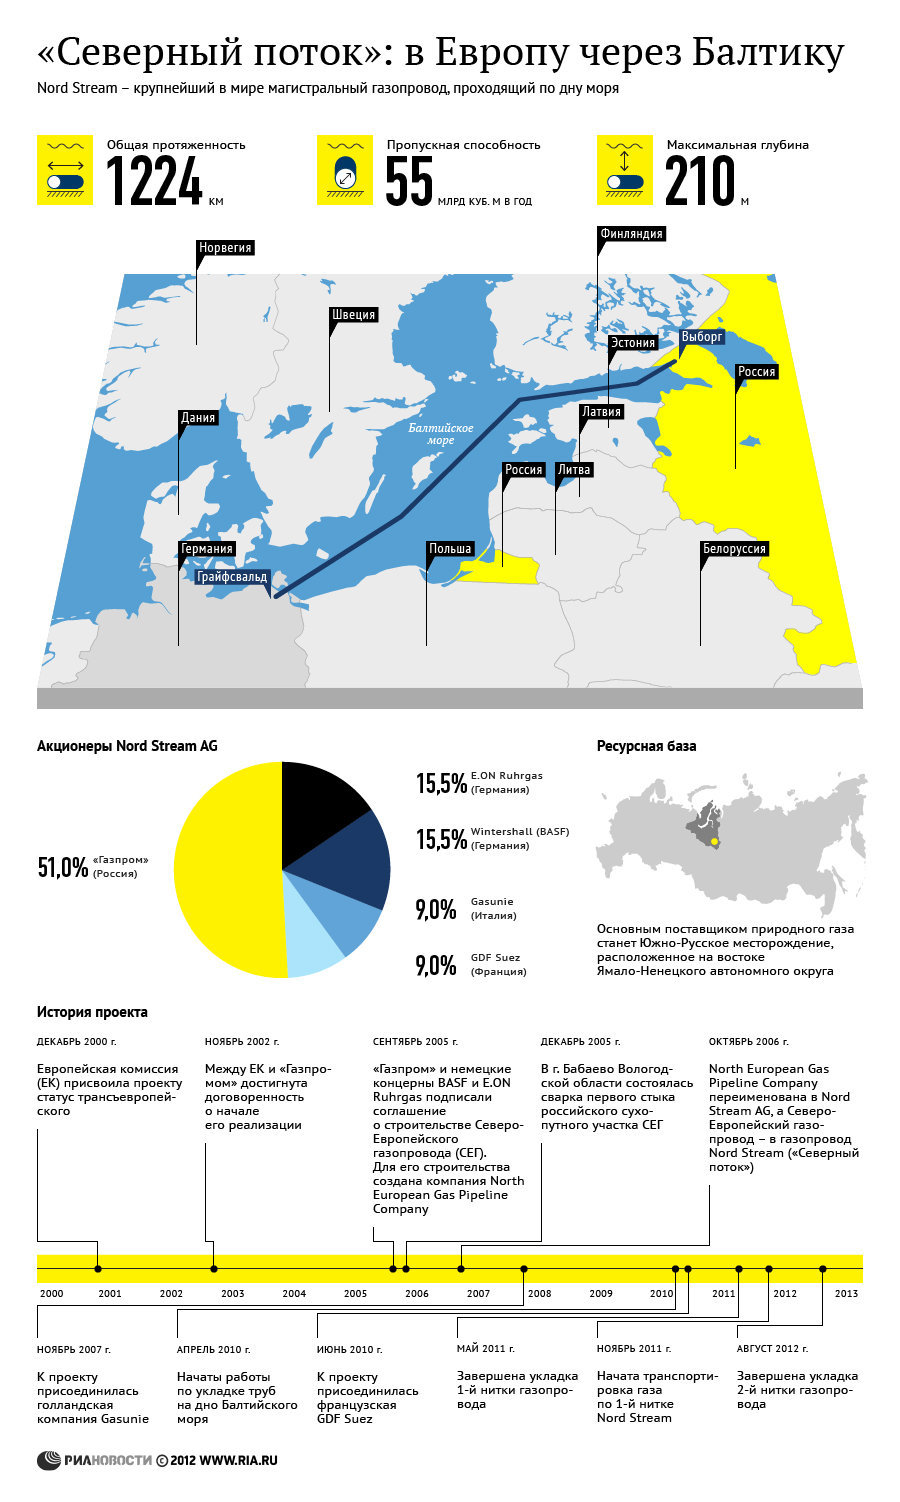 Газопровод Северный поток: история, акционеры и ресурсная база